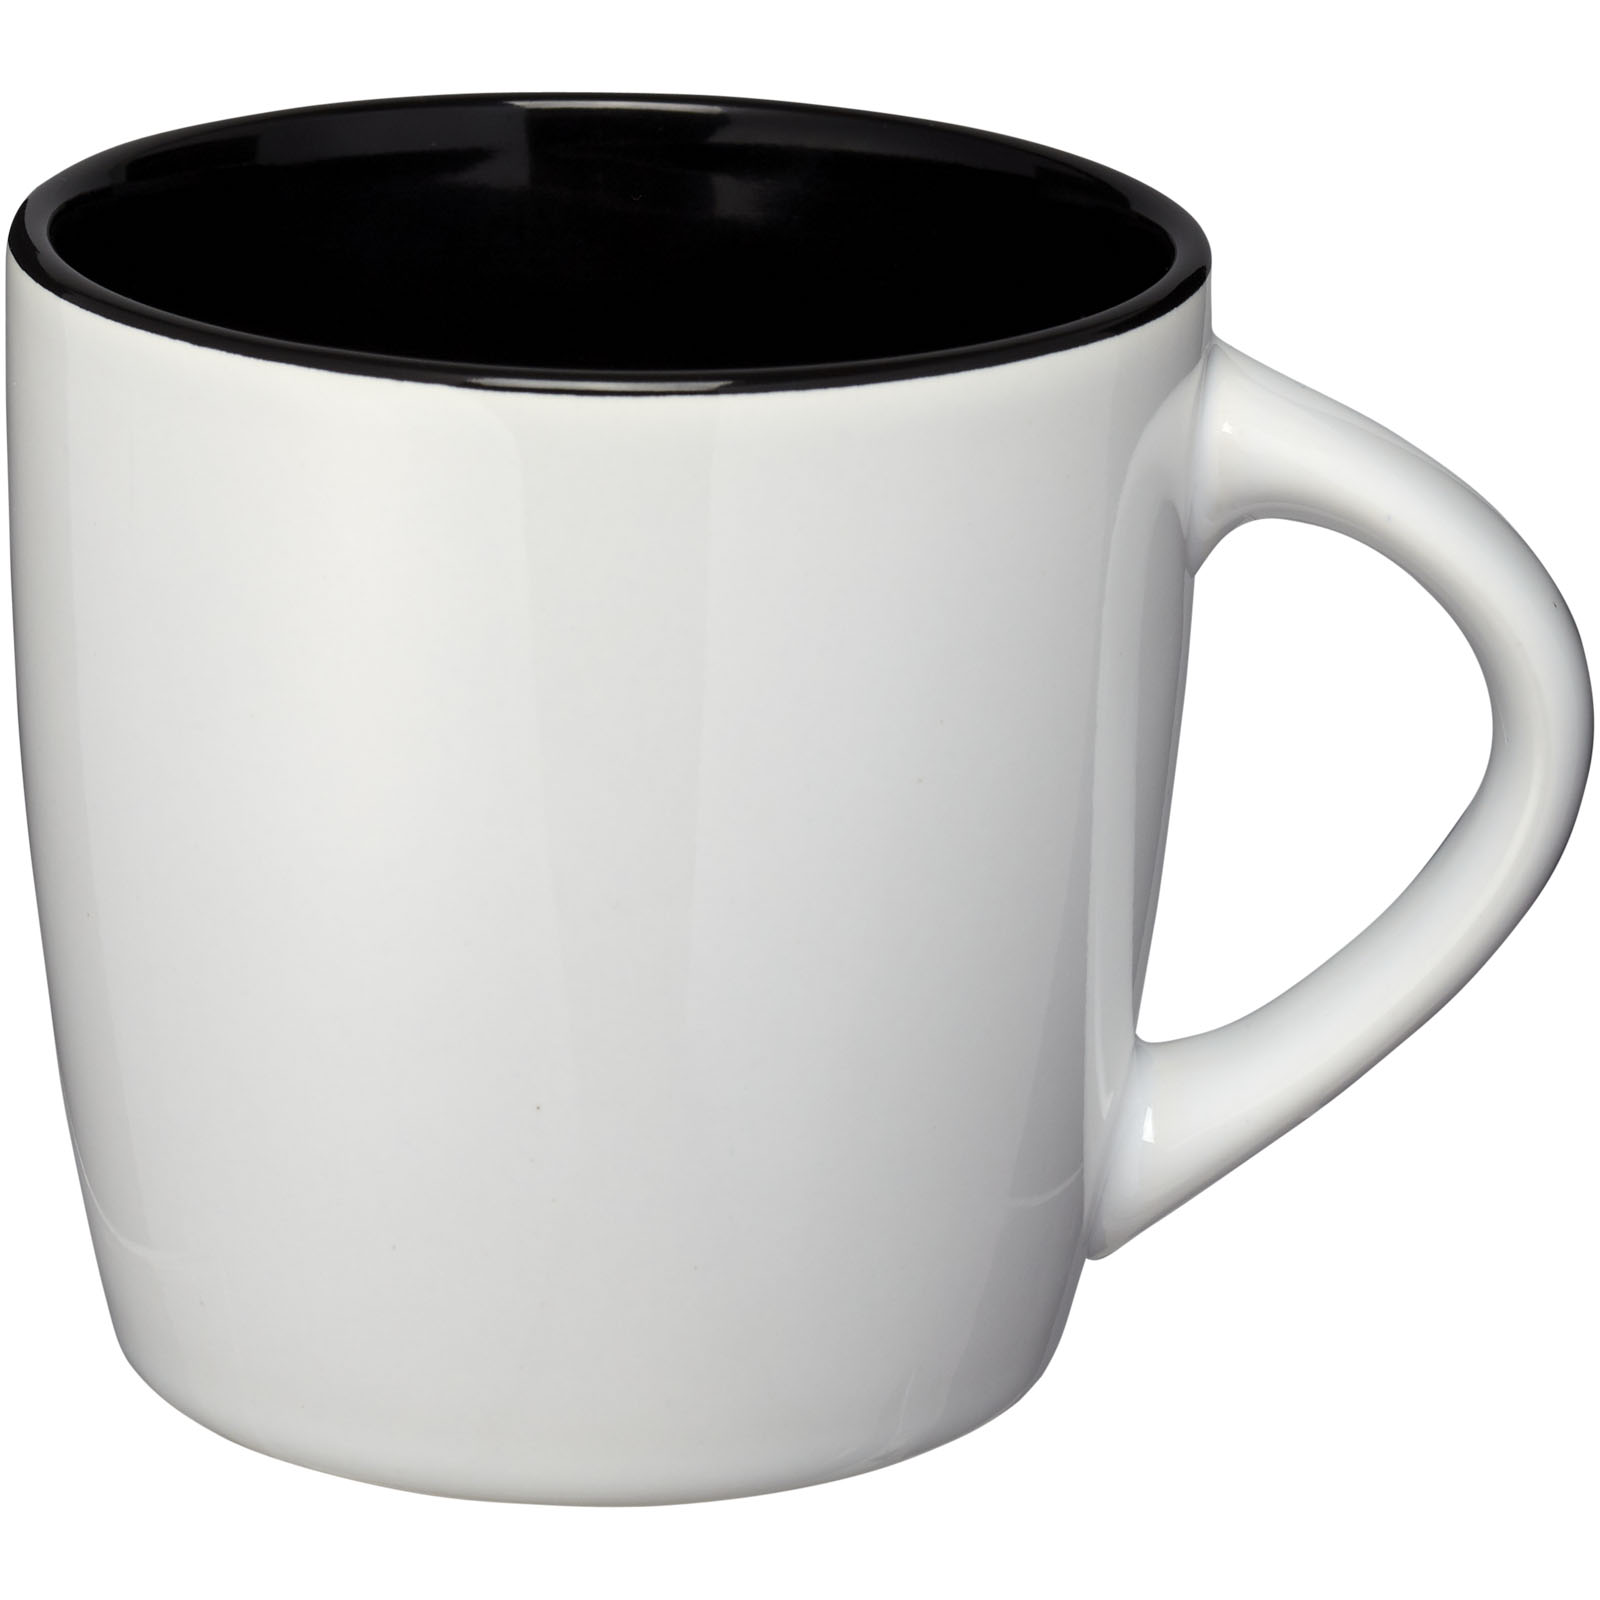 Standard mugs - Aztec 340 ml ceramic mug